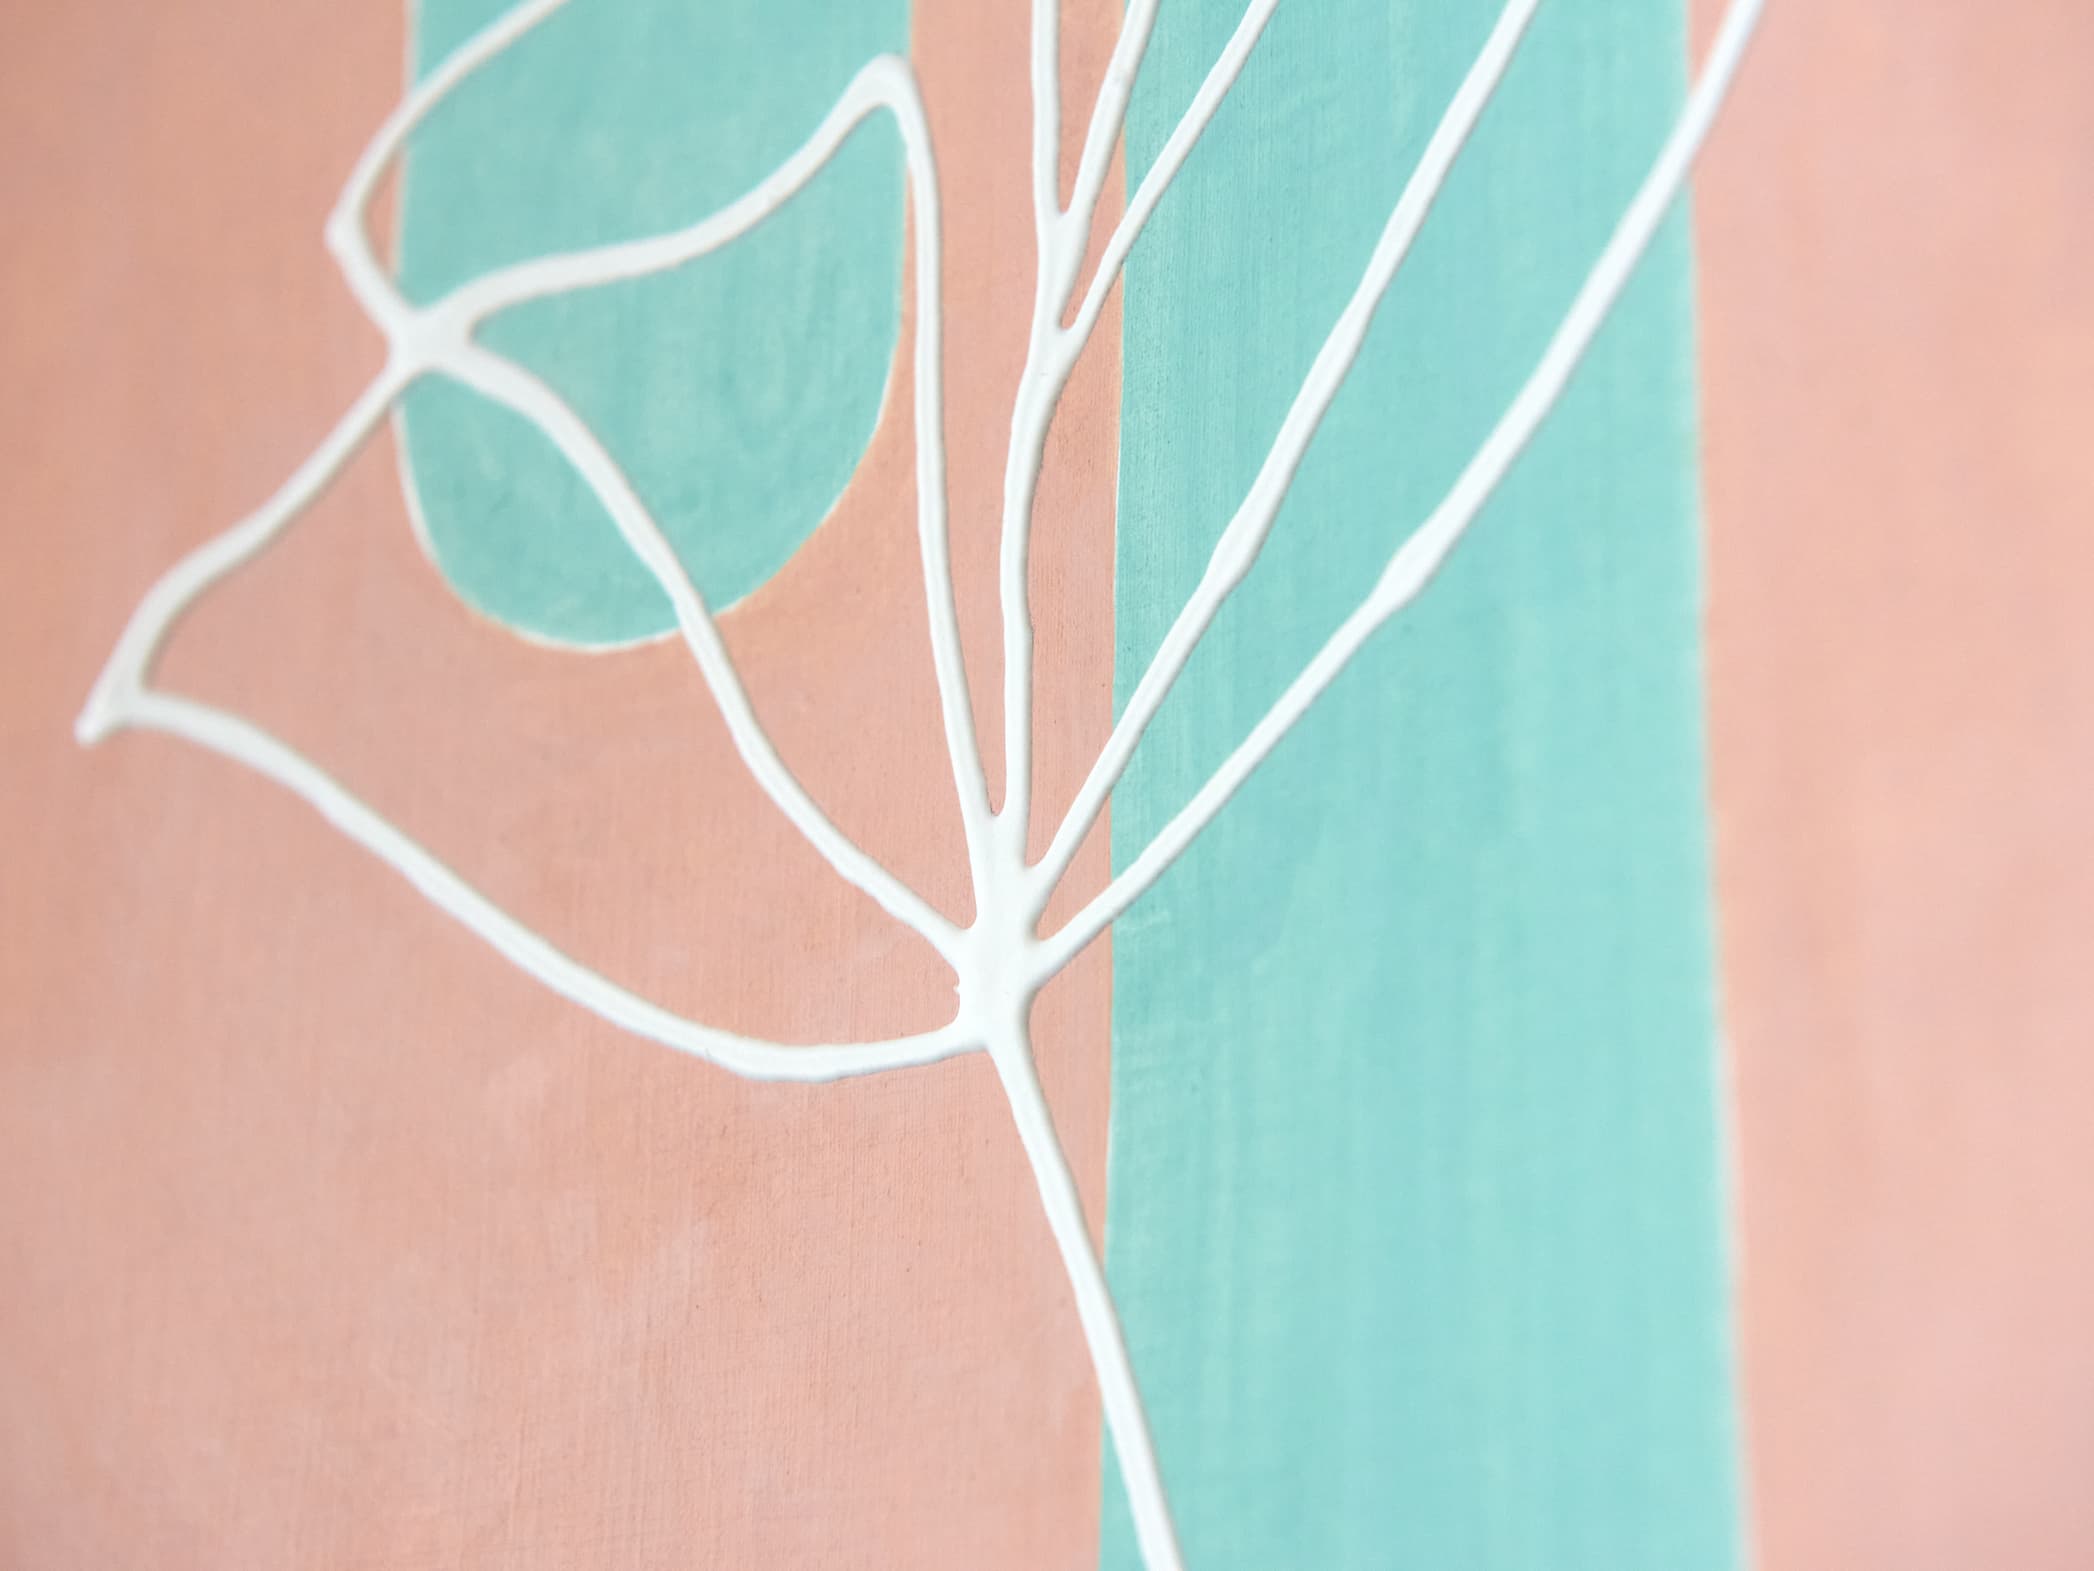 Abstraktes botanisches Gemälde mit weißen Linien, die Blattumrisse auf einem weichen pfirsich- und blaugrünen Hintergrund darstellen, erstellt mit edding 5000 Acrylmarker breit mit hochpigmentierter Tinte.